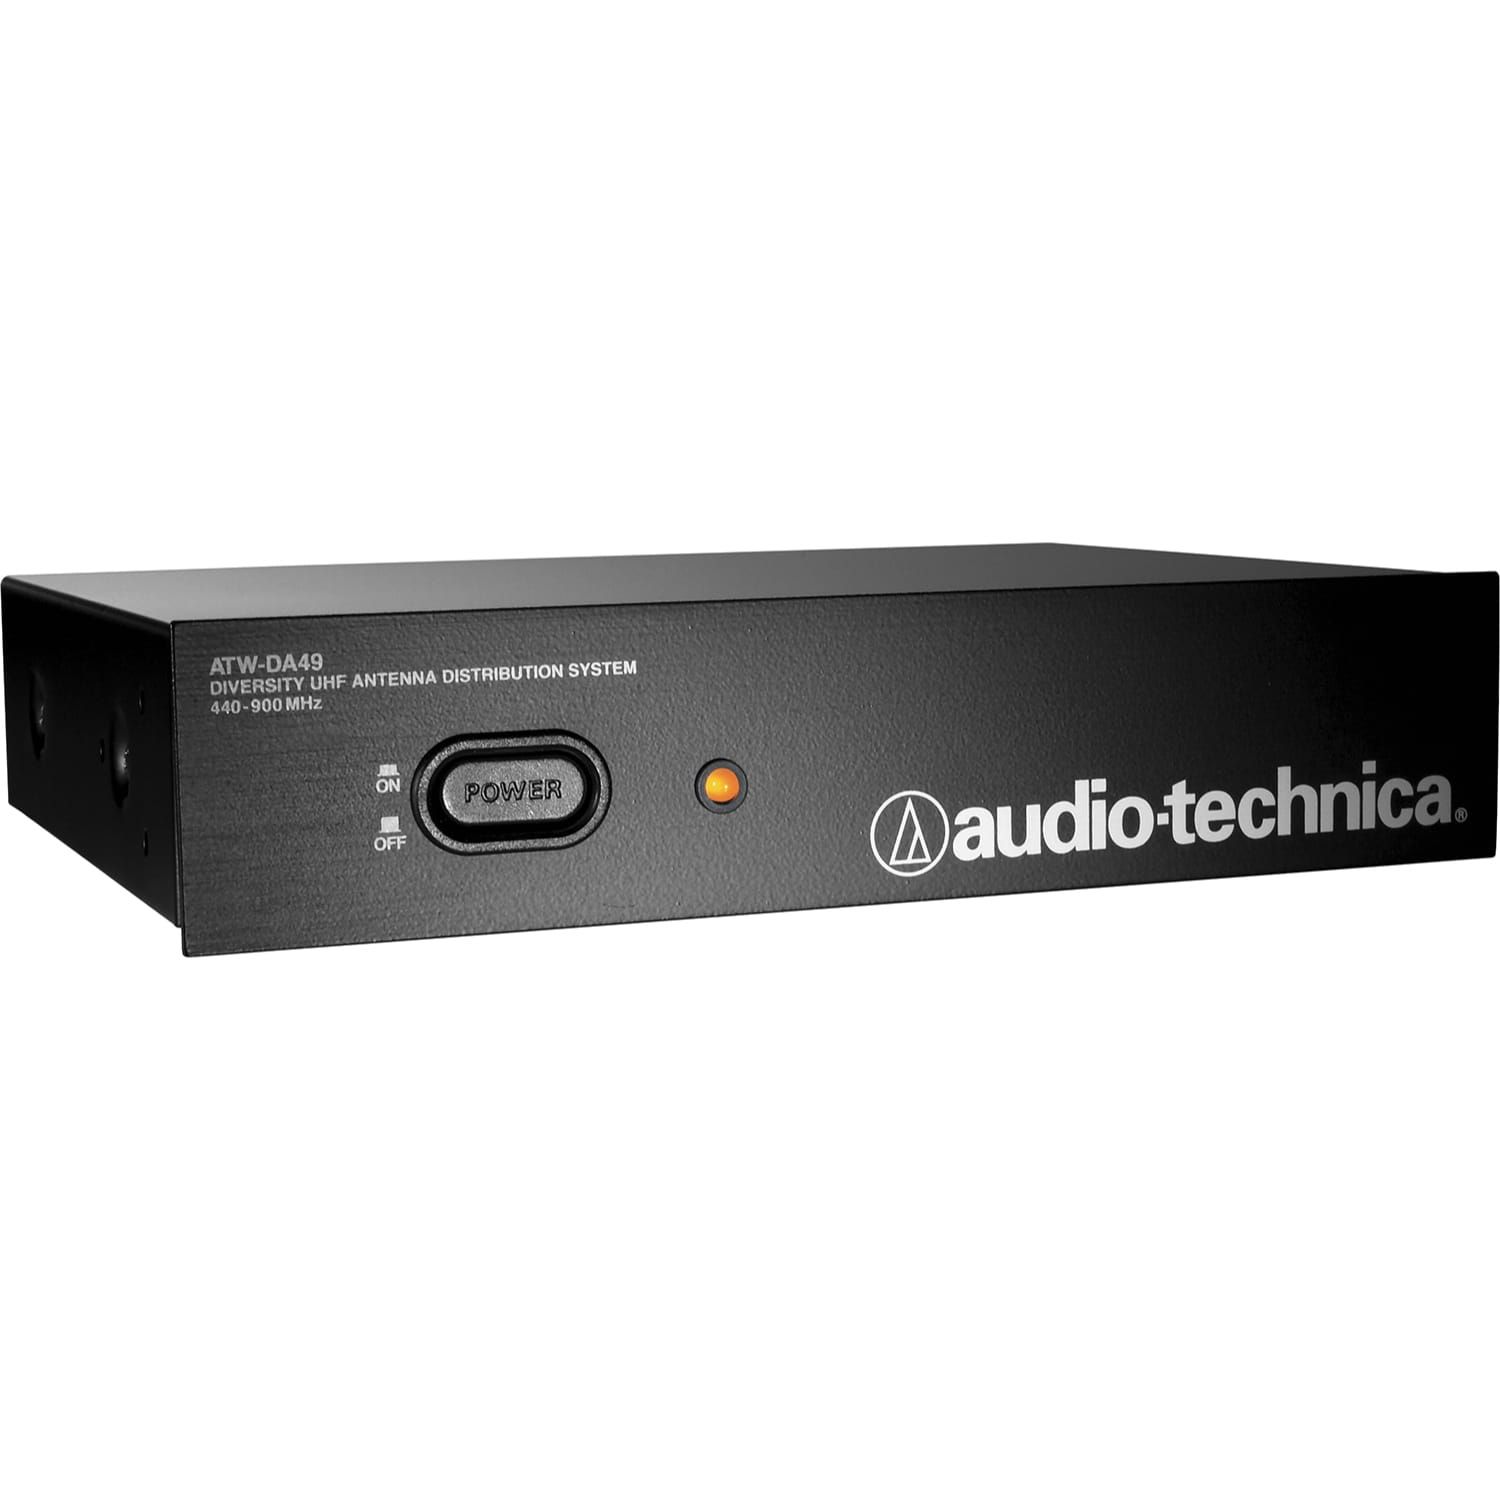 Audio-technica ATW-DA49